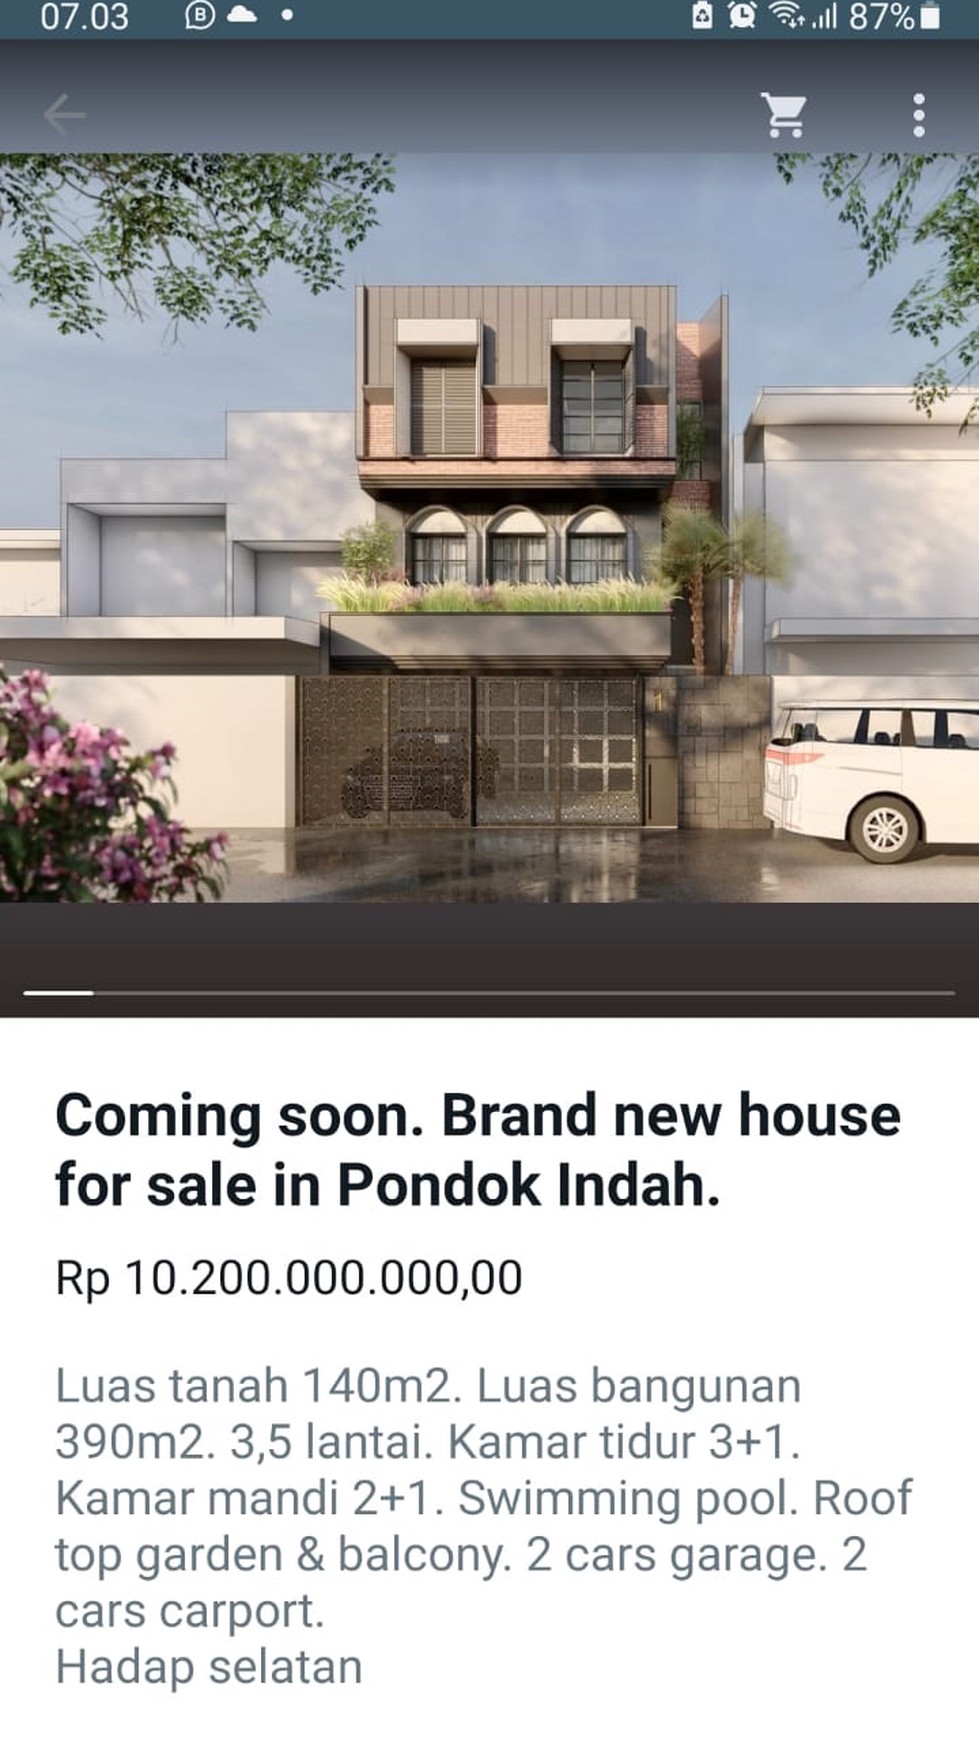 Rumah Brand New Lokasi Premium Pondok Indah